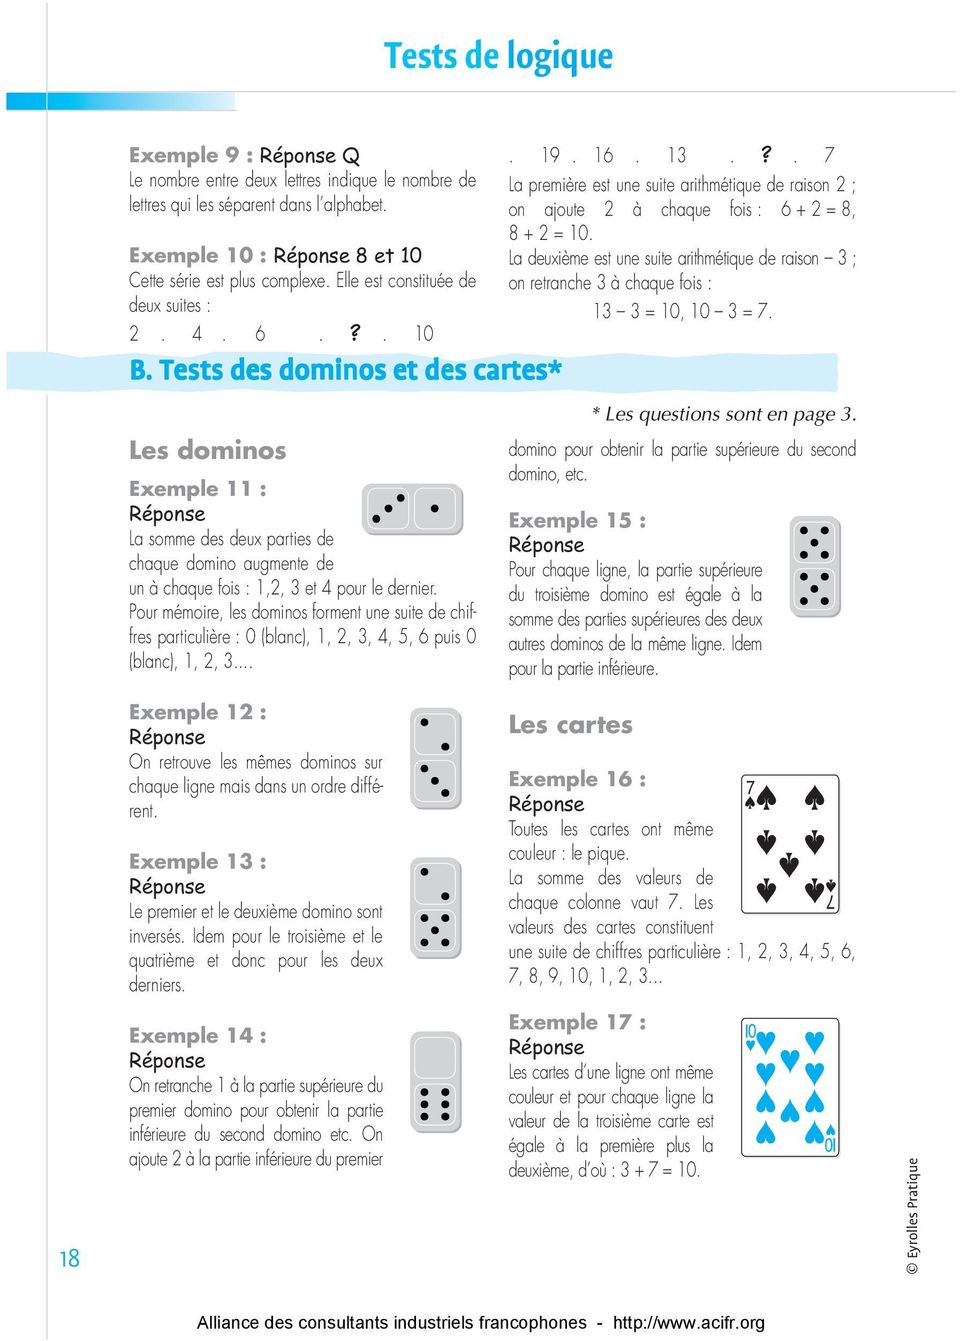 Tests des dominos et des cartes* Les dominos Exemple 11 : Réponse La somme des deux parties de chaque domino augmente de un à chaque fois : 1,2, 3 et 4 pour le dernier.